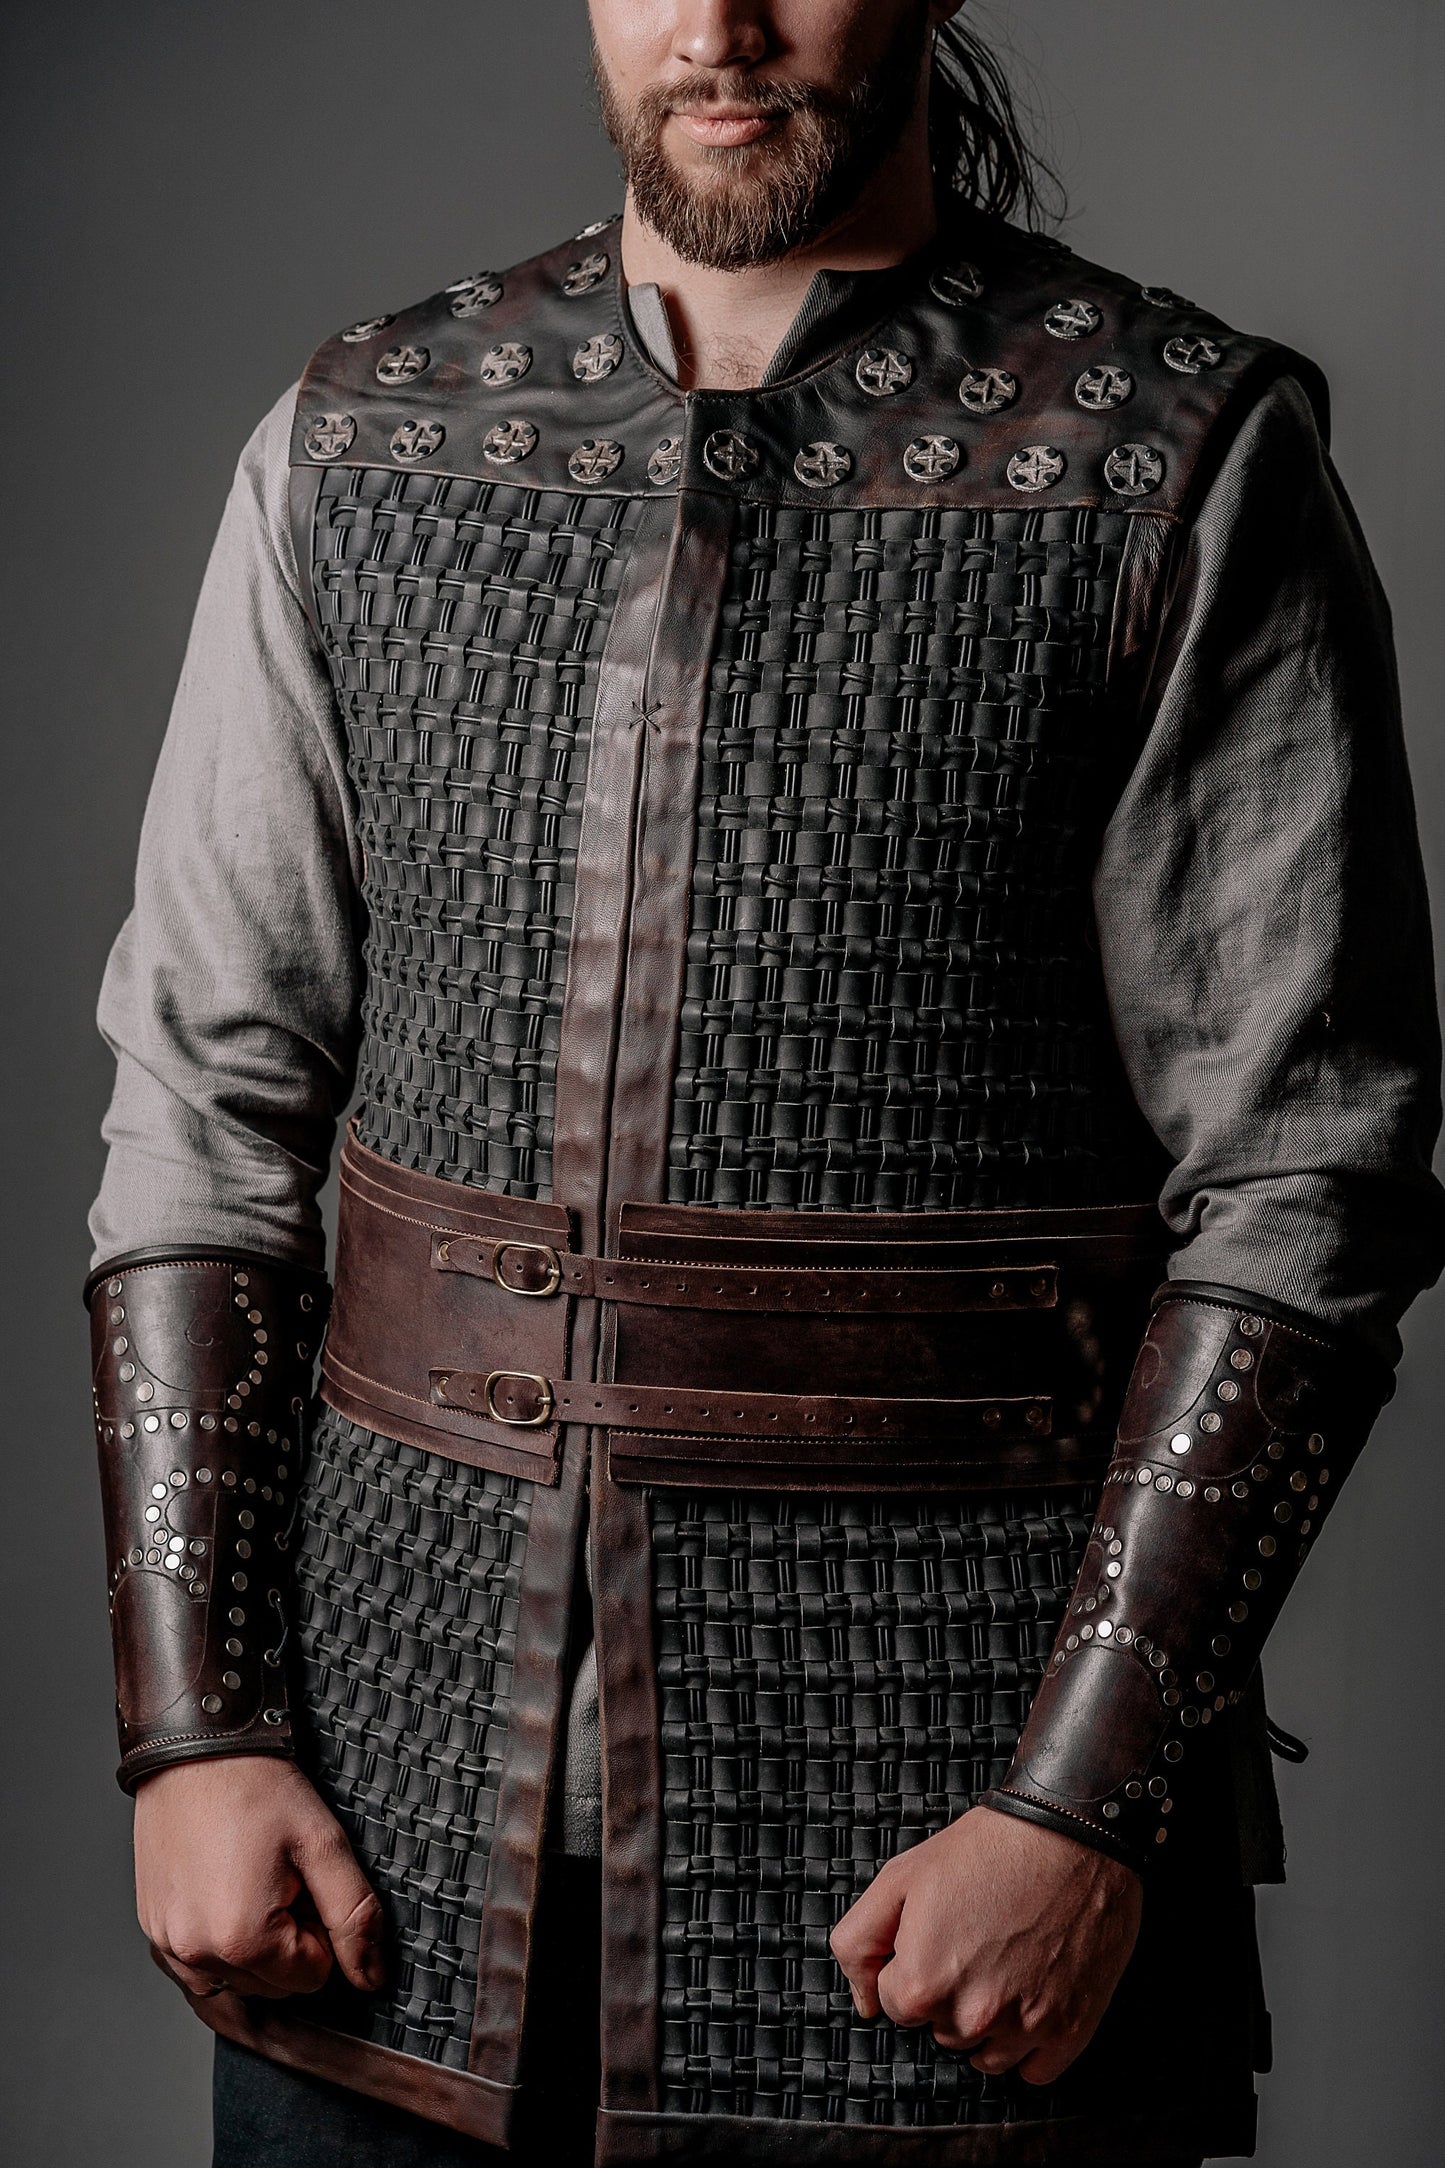 Uhtred viking costume (Last Kingdom season 3)